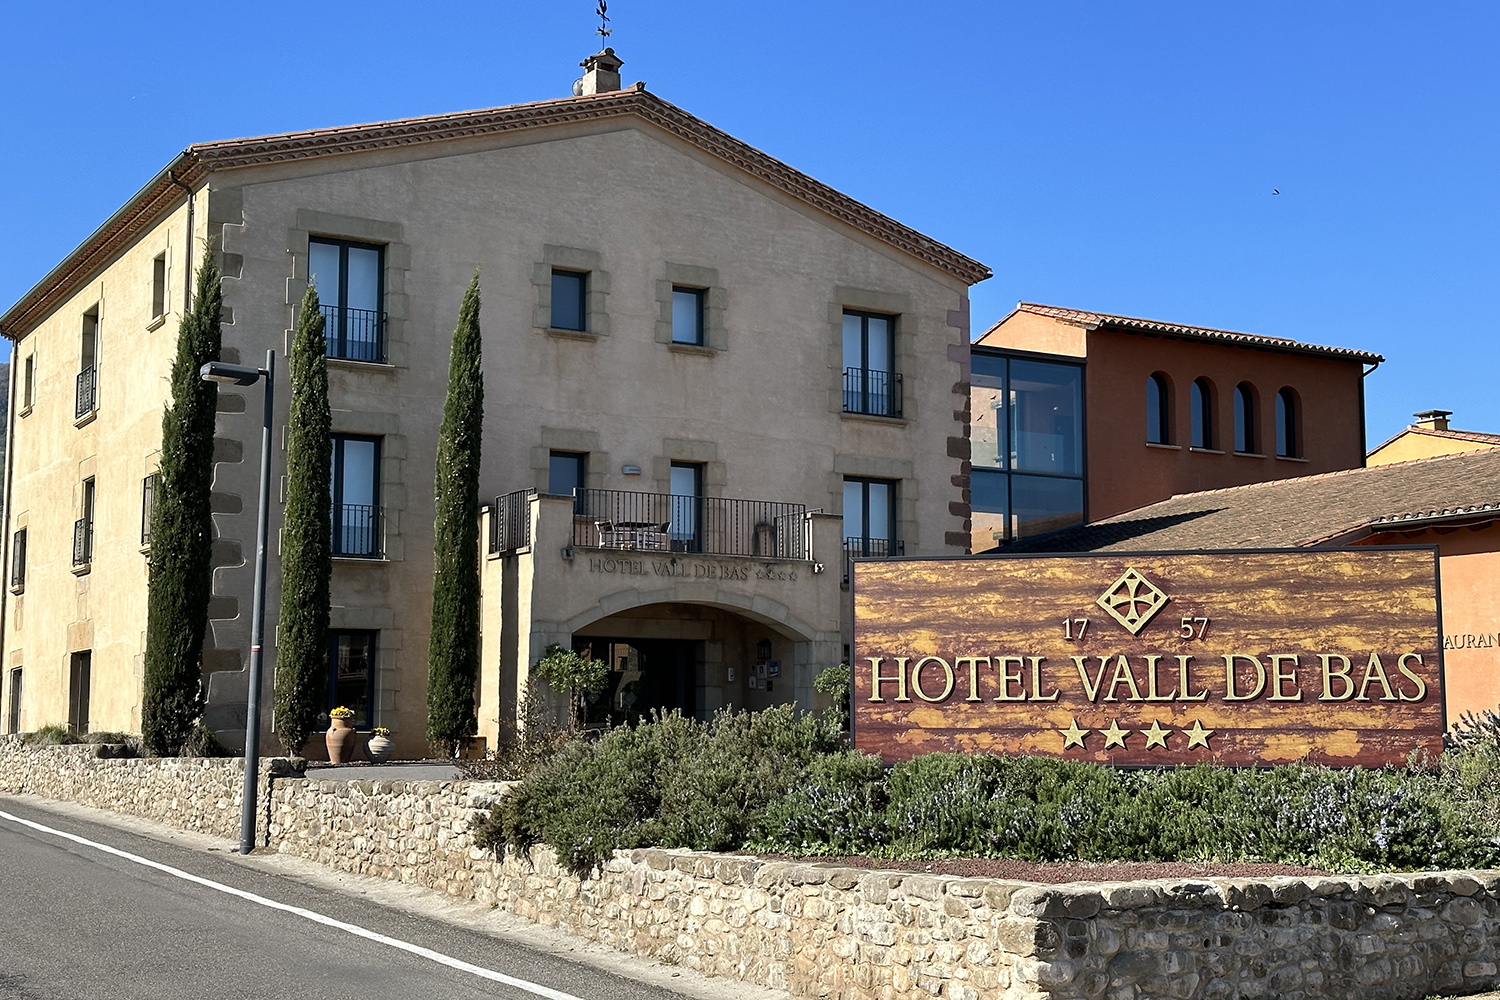 Hotel Vall de Bass in Catalonië in Spanje